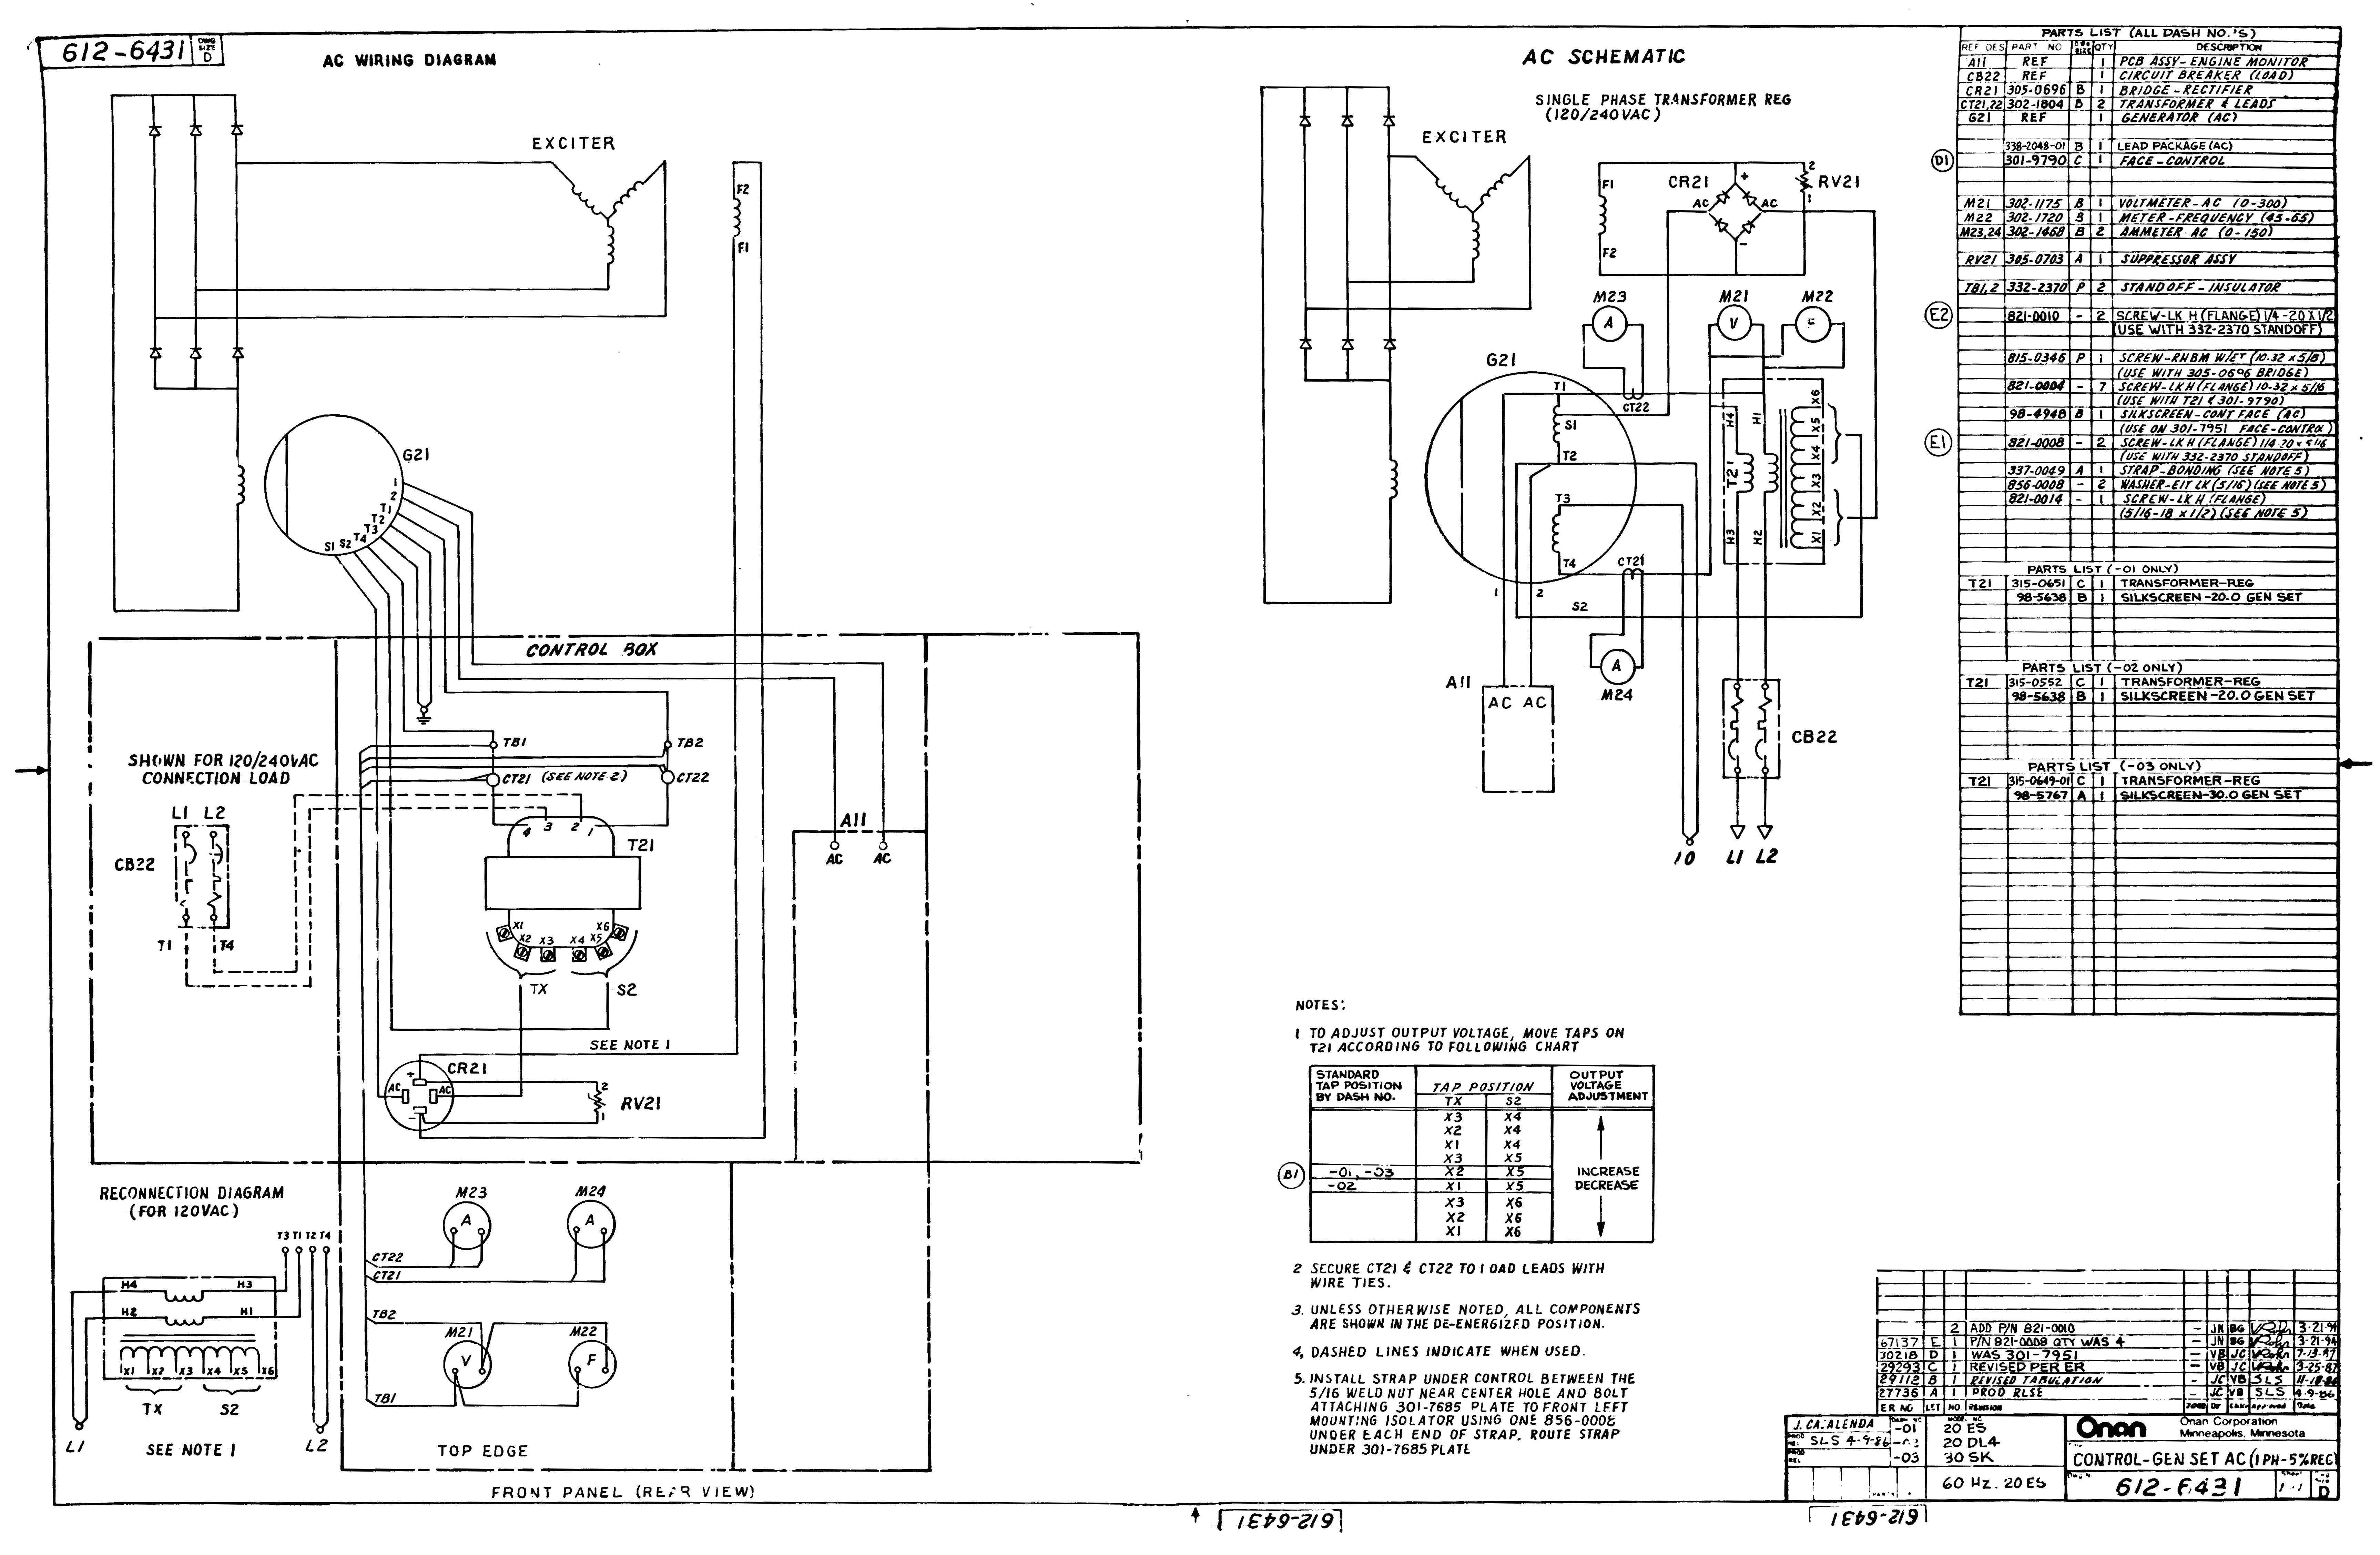 Onan 5500 Generator Wiring Diagram Wiring Diagram for Onan Generator Wiring Diagram today